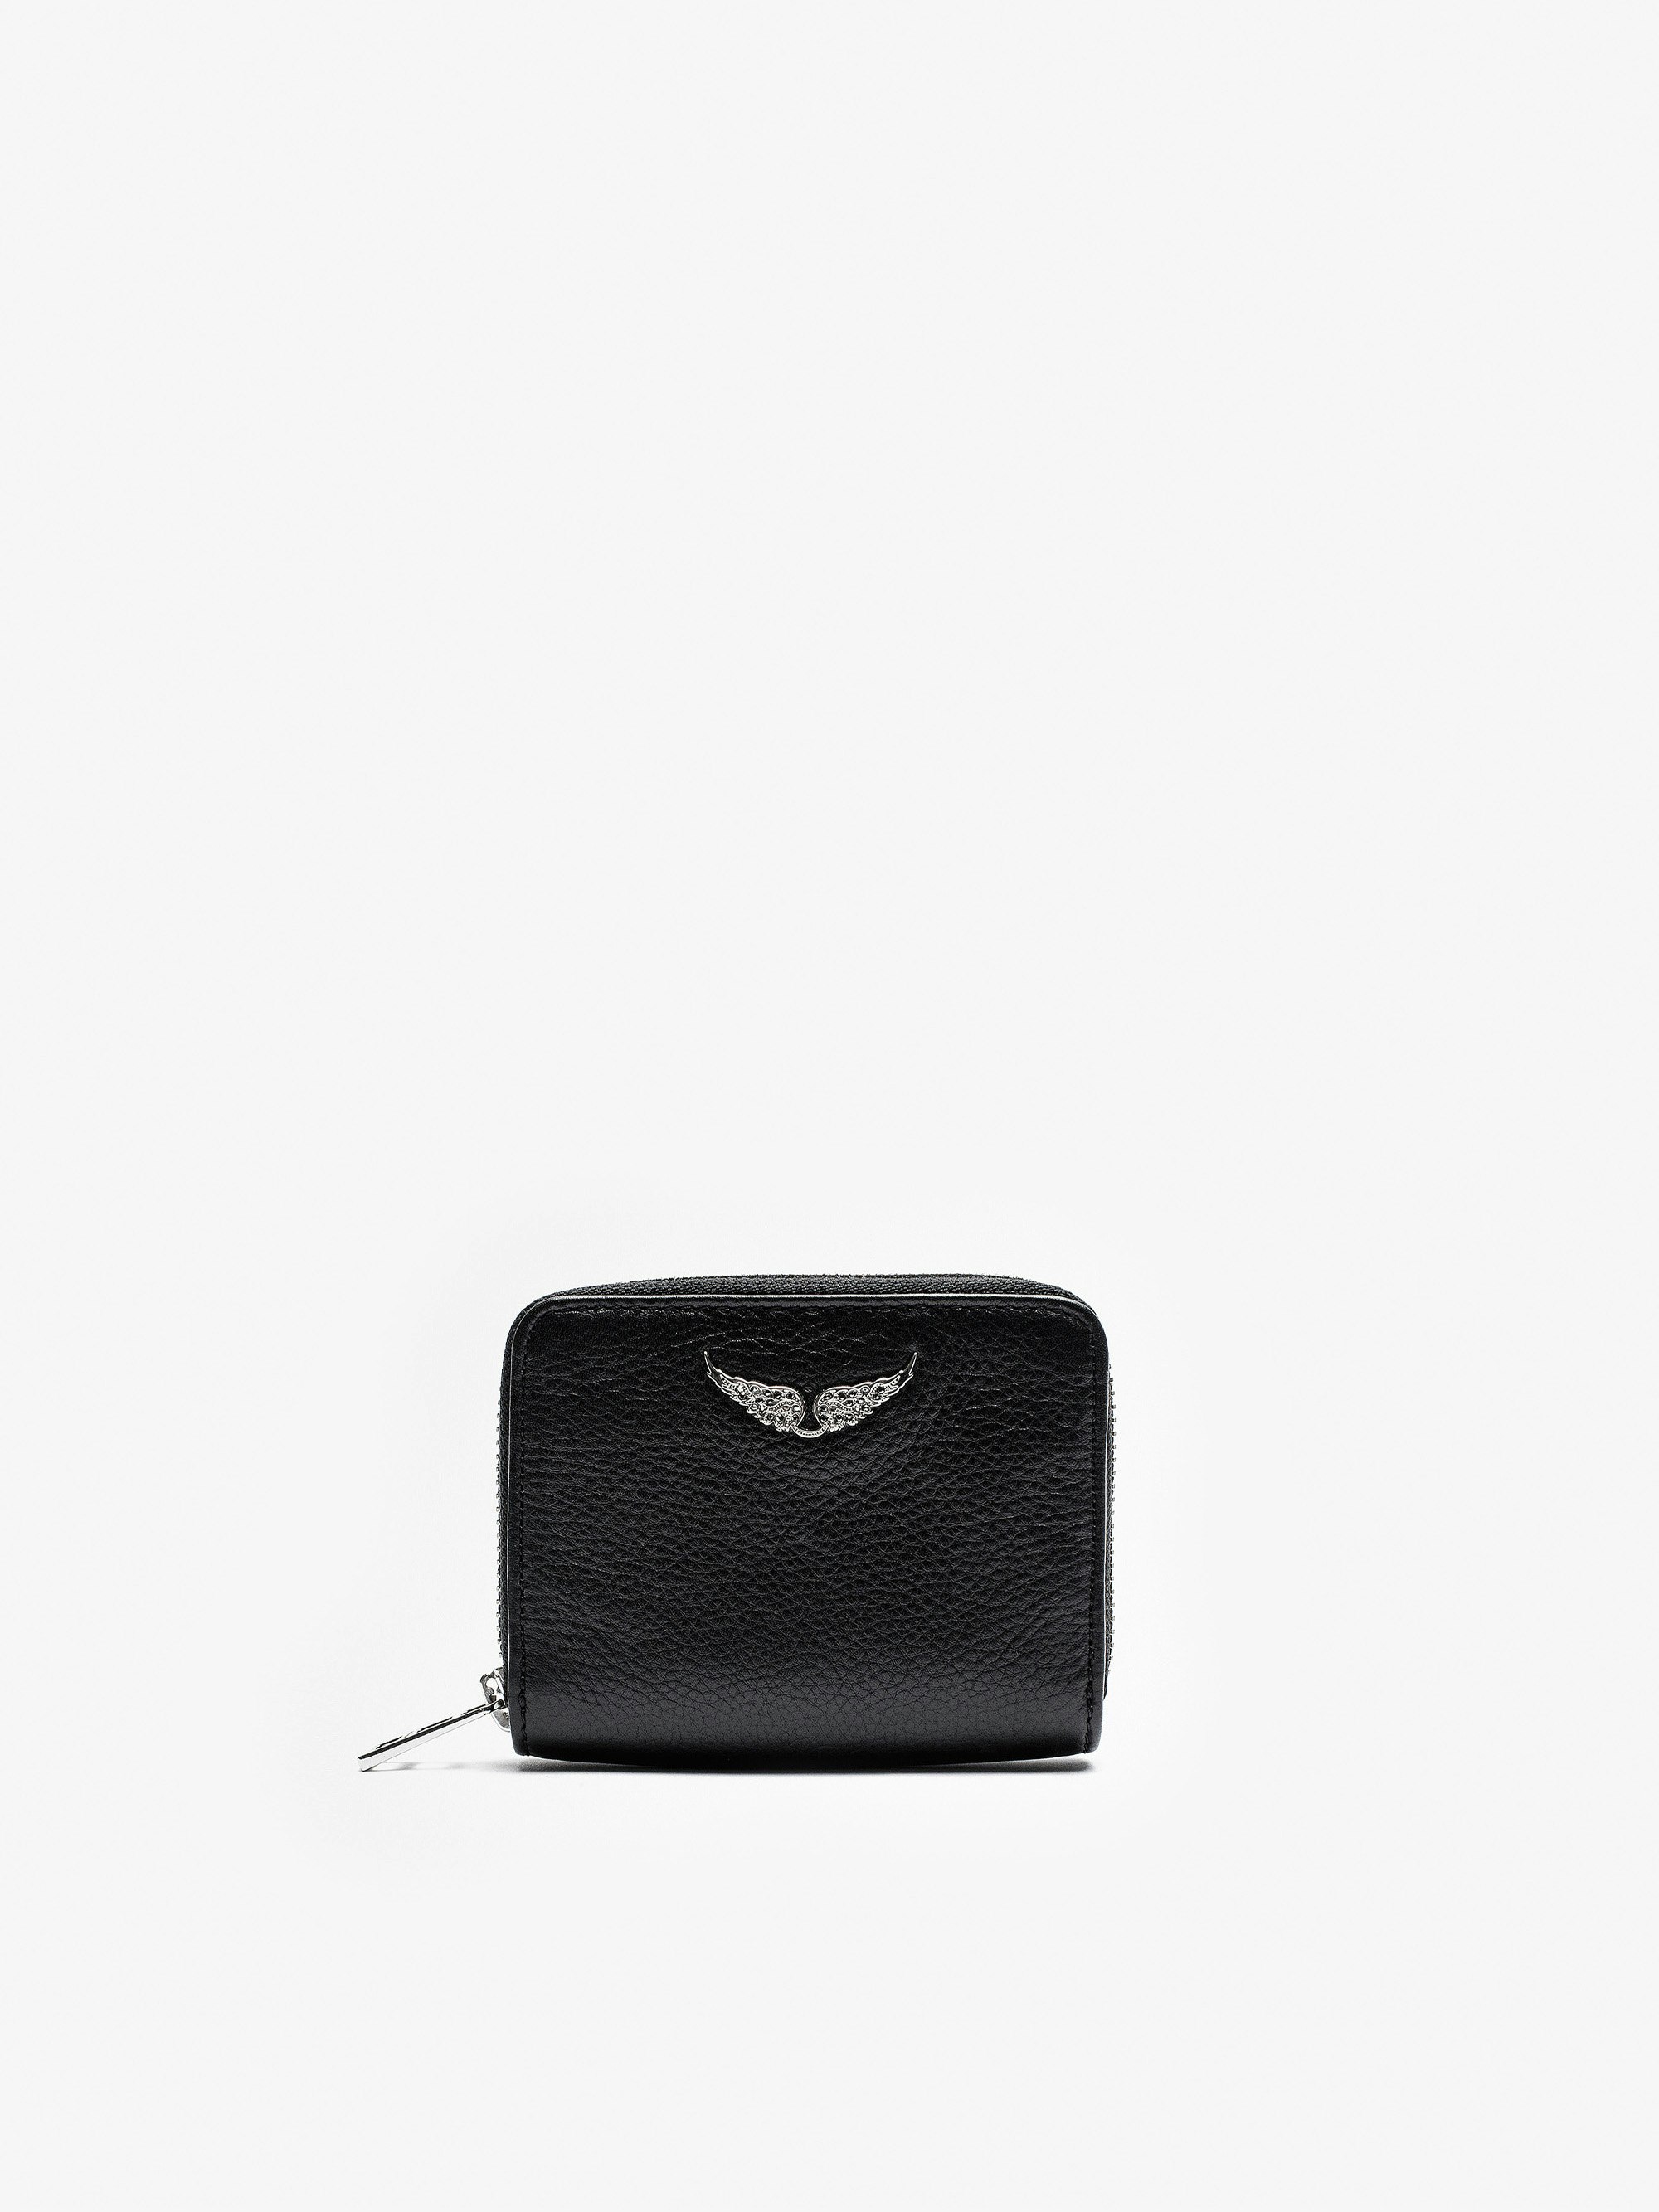 Mini ZV Wallet - Women's black leather wallet